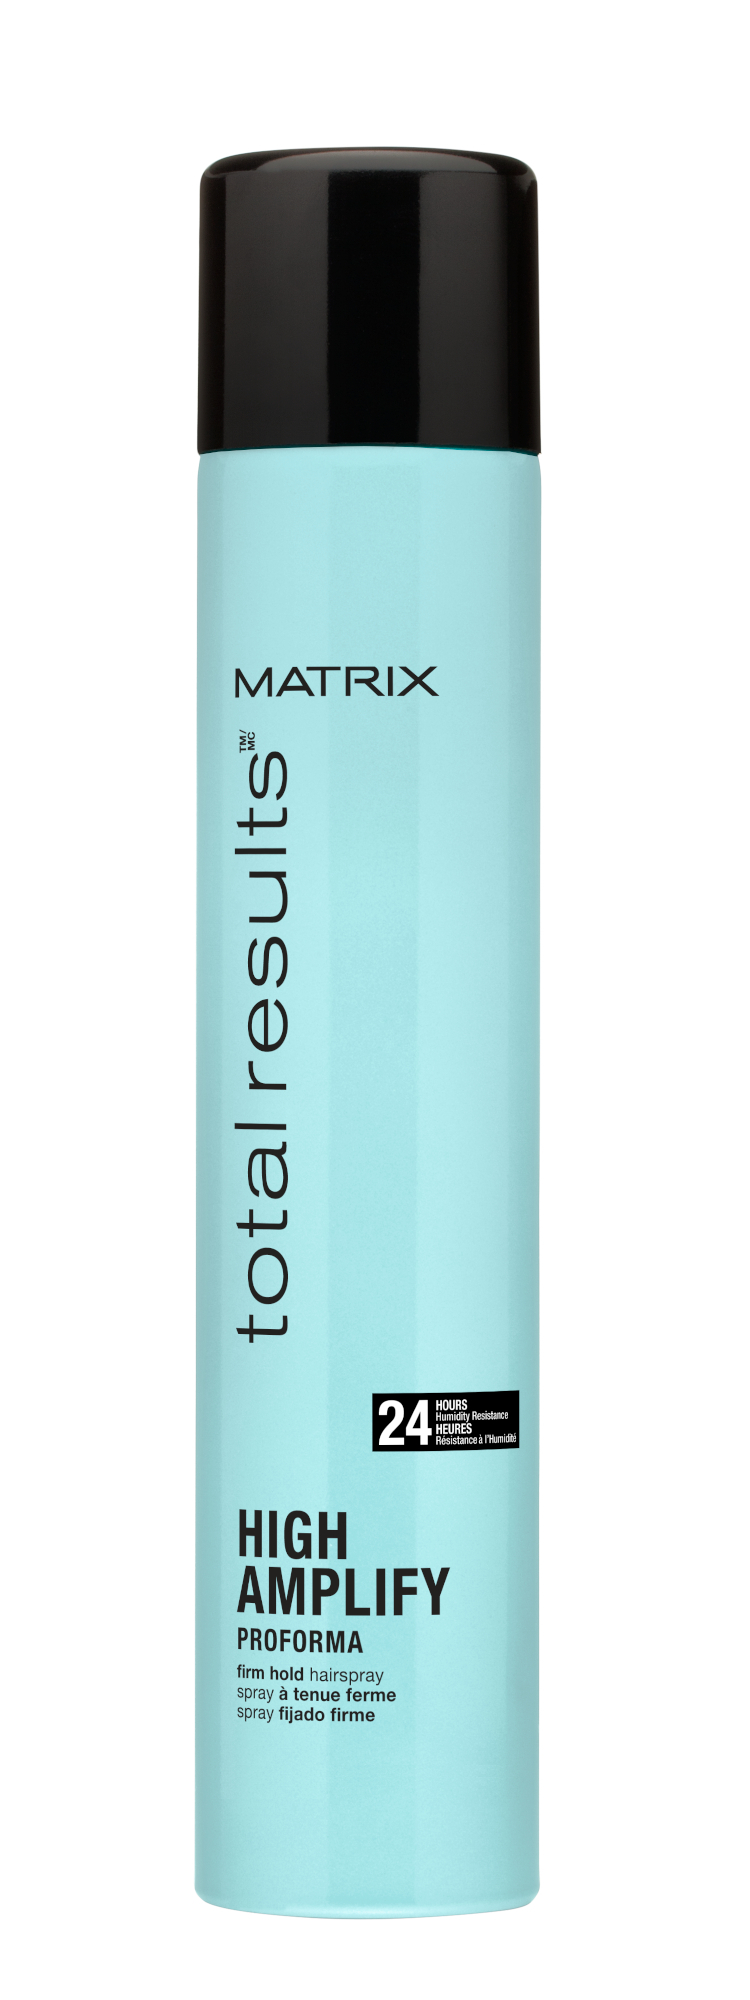 Lak na vlasy pro dlouhotrvající objem a extra fixaci Matrix High Amplify - 400 ml + DÁREK ZDARMA